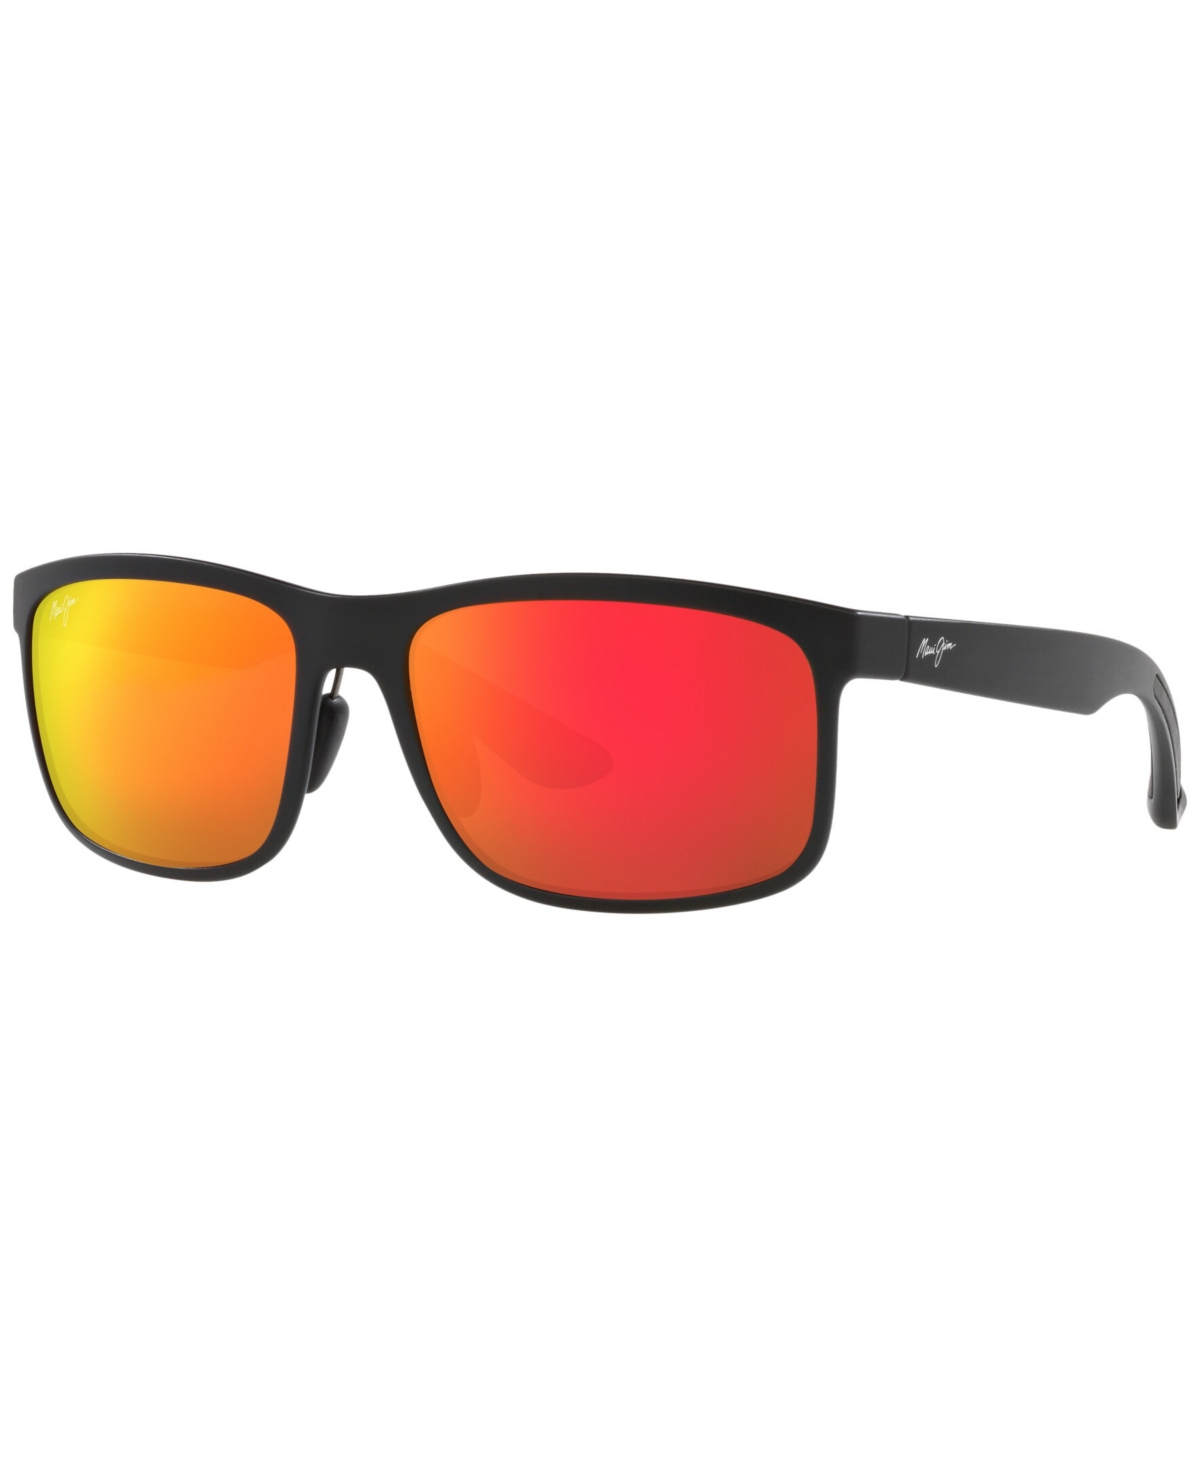 Unisex Sunglasses, MJ000677 Huelo 58 - Black